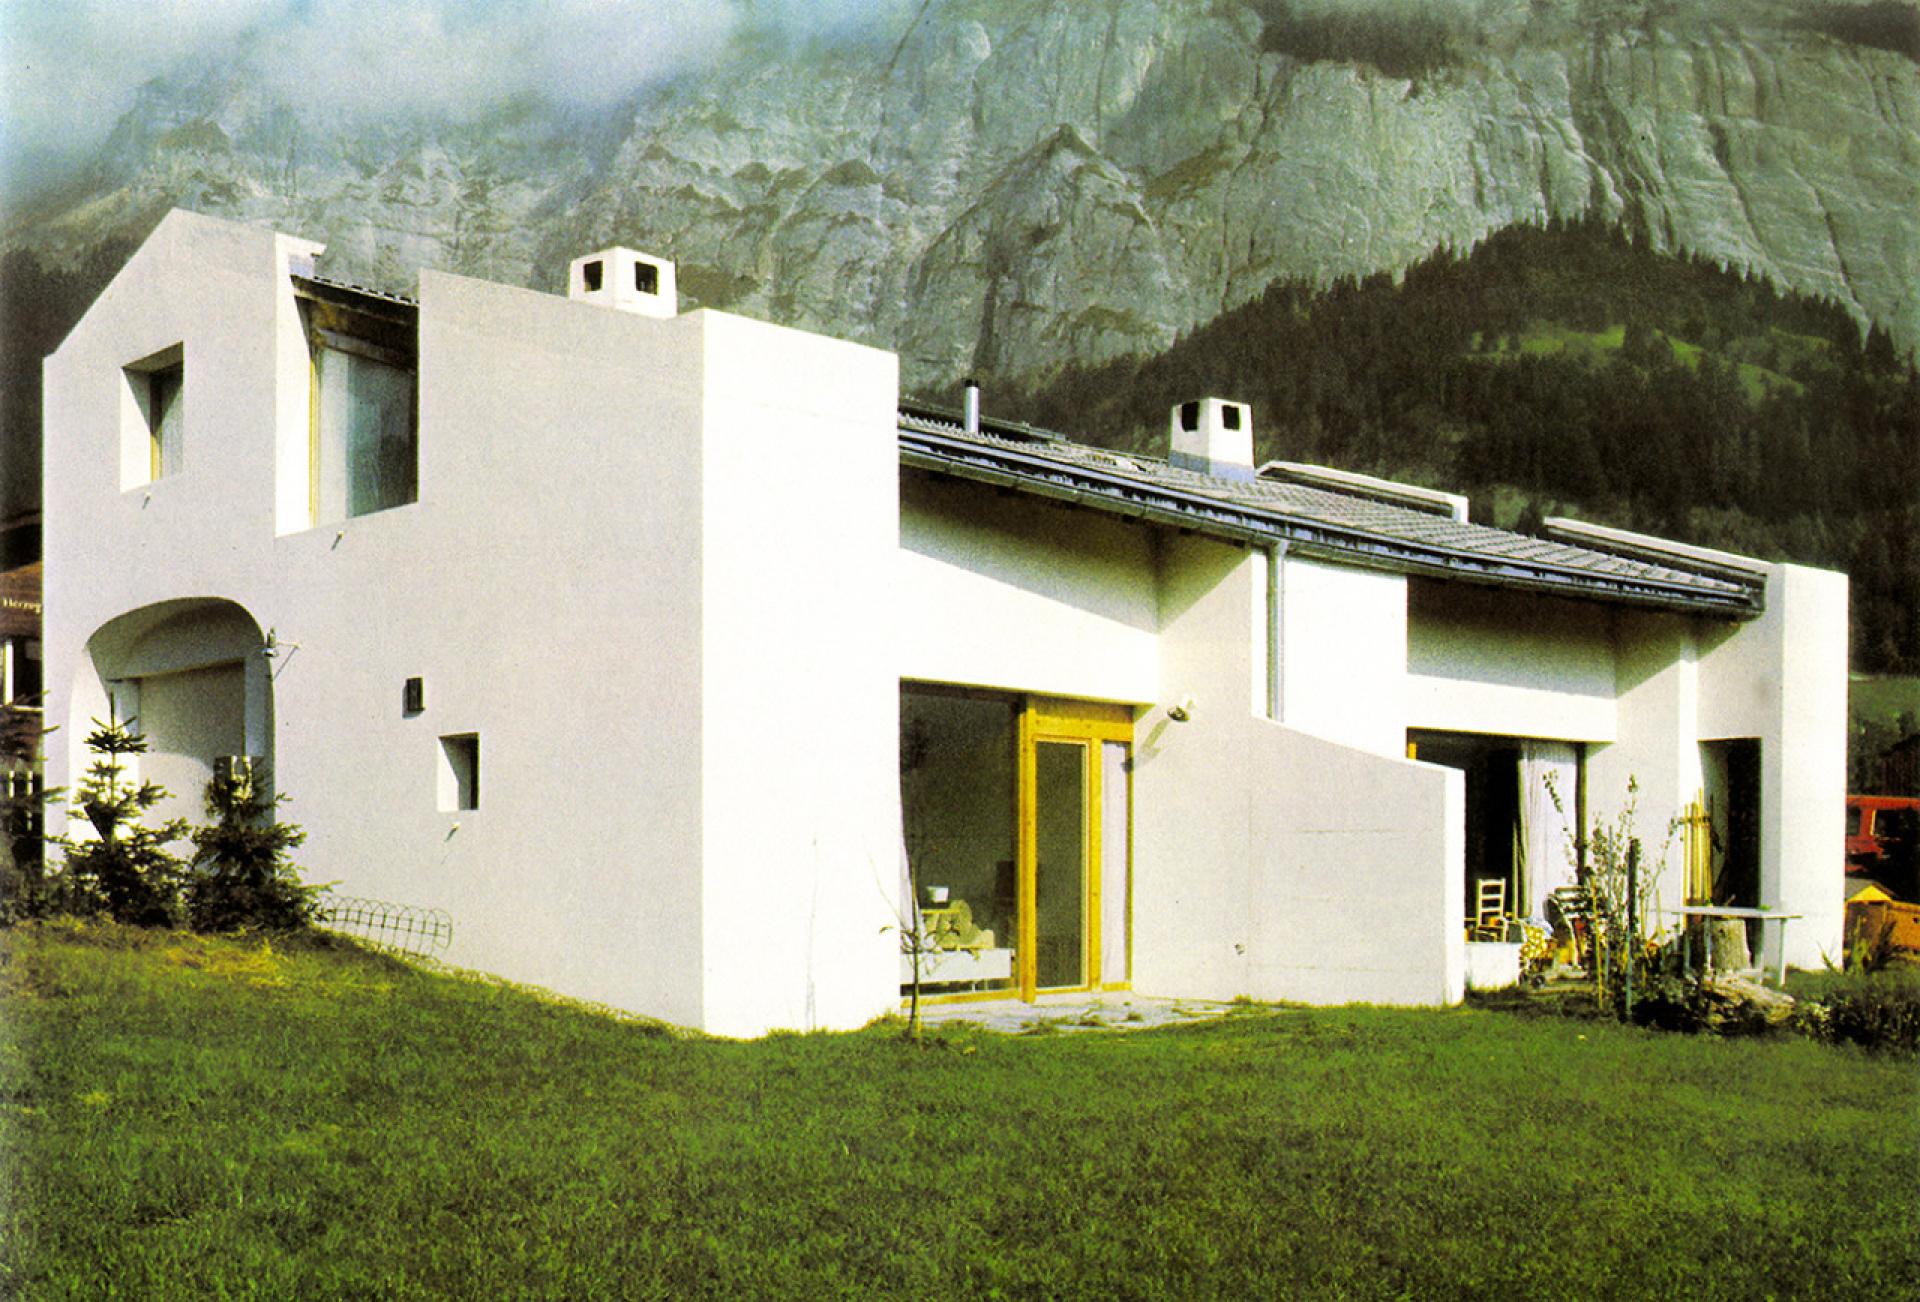 Schäfer house (1975) designed by Rudolf Olgiati in Flims - Graubünden, Switzerland. | Photo via Elara Fritzenwalden